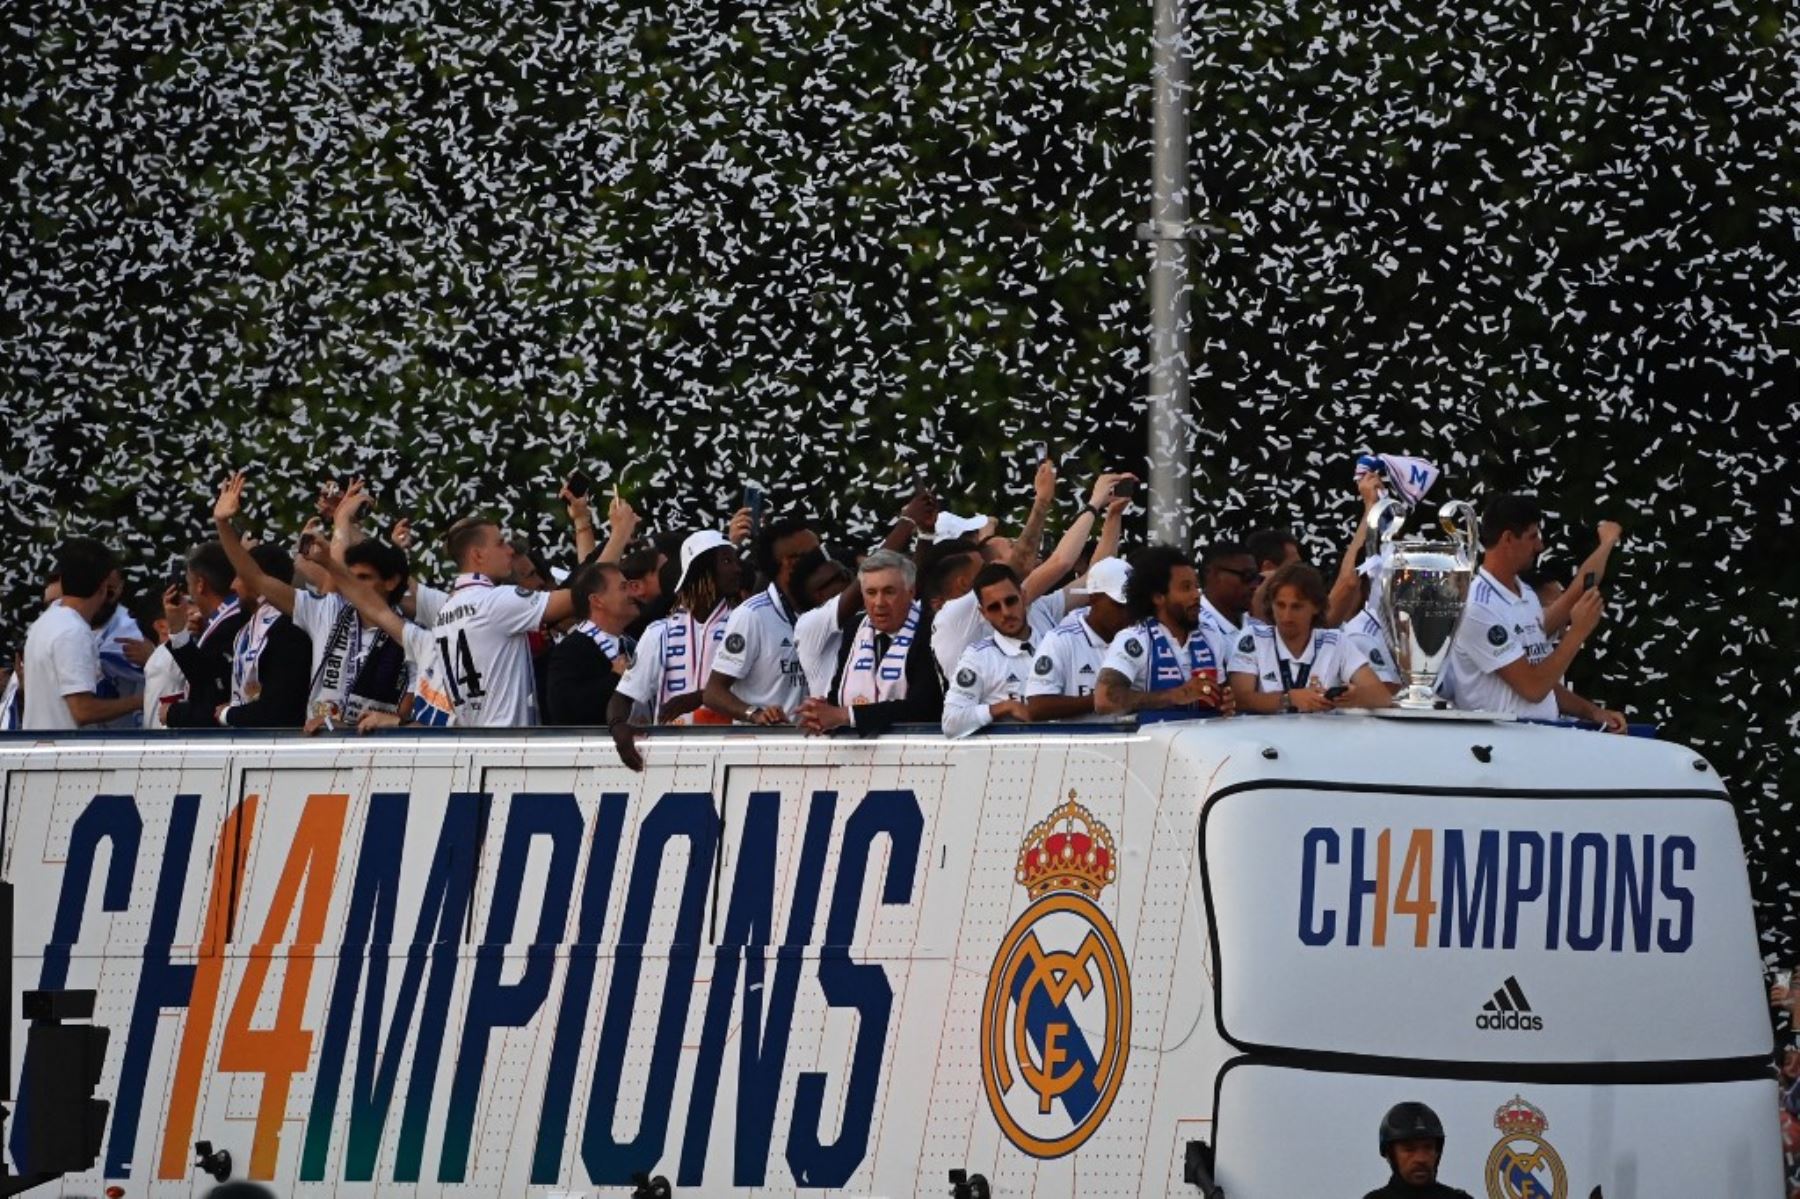 El Real Madrid concluyó los actos institucionales de celebración tras ganar la 14ª Liga de Campeones con su visita al Ayuntamiento de Madrid